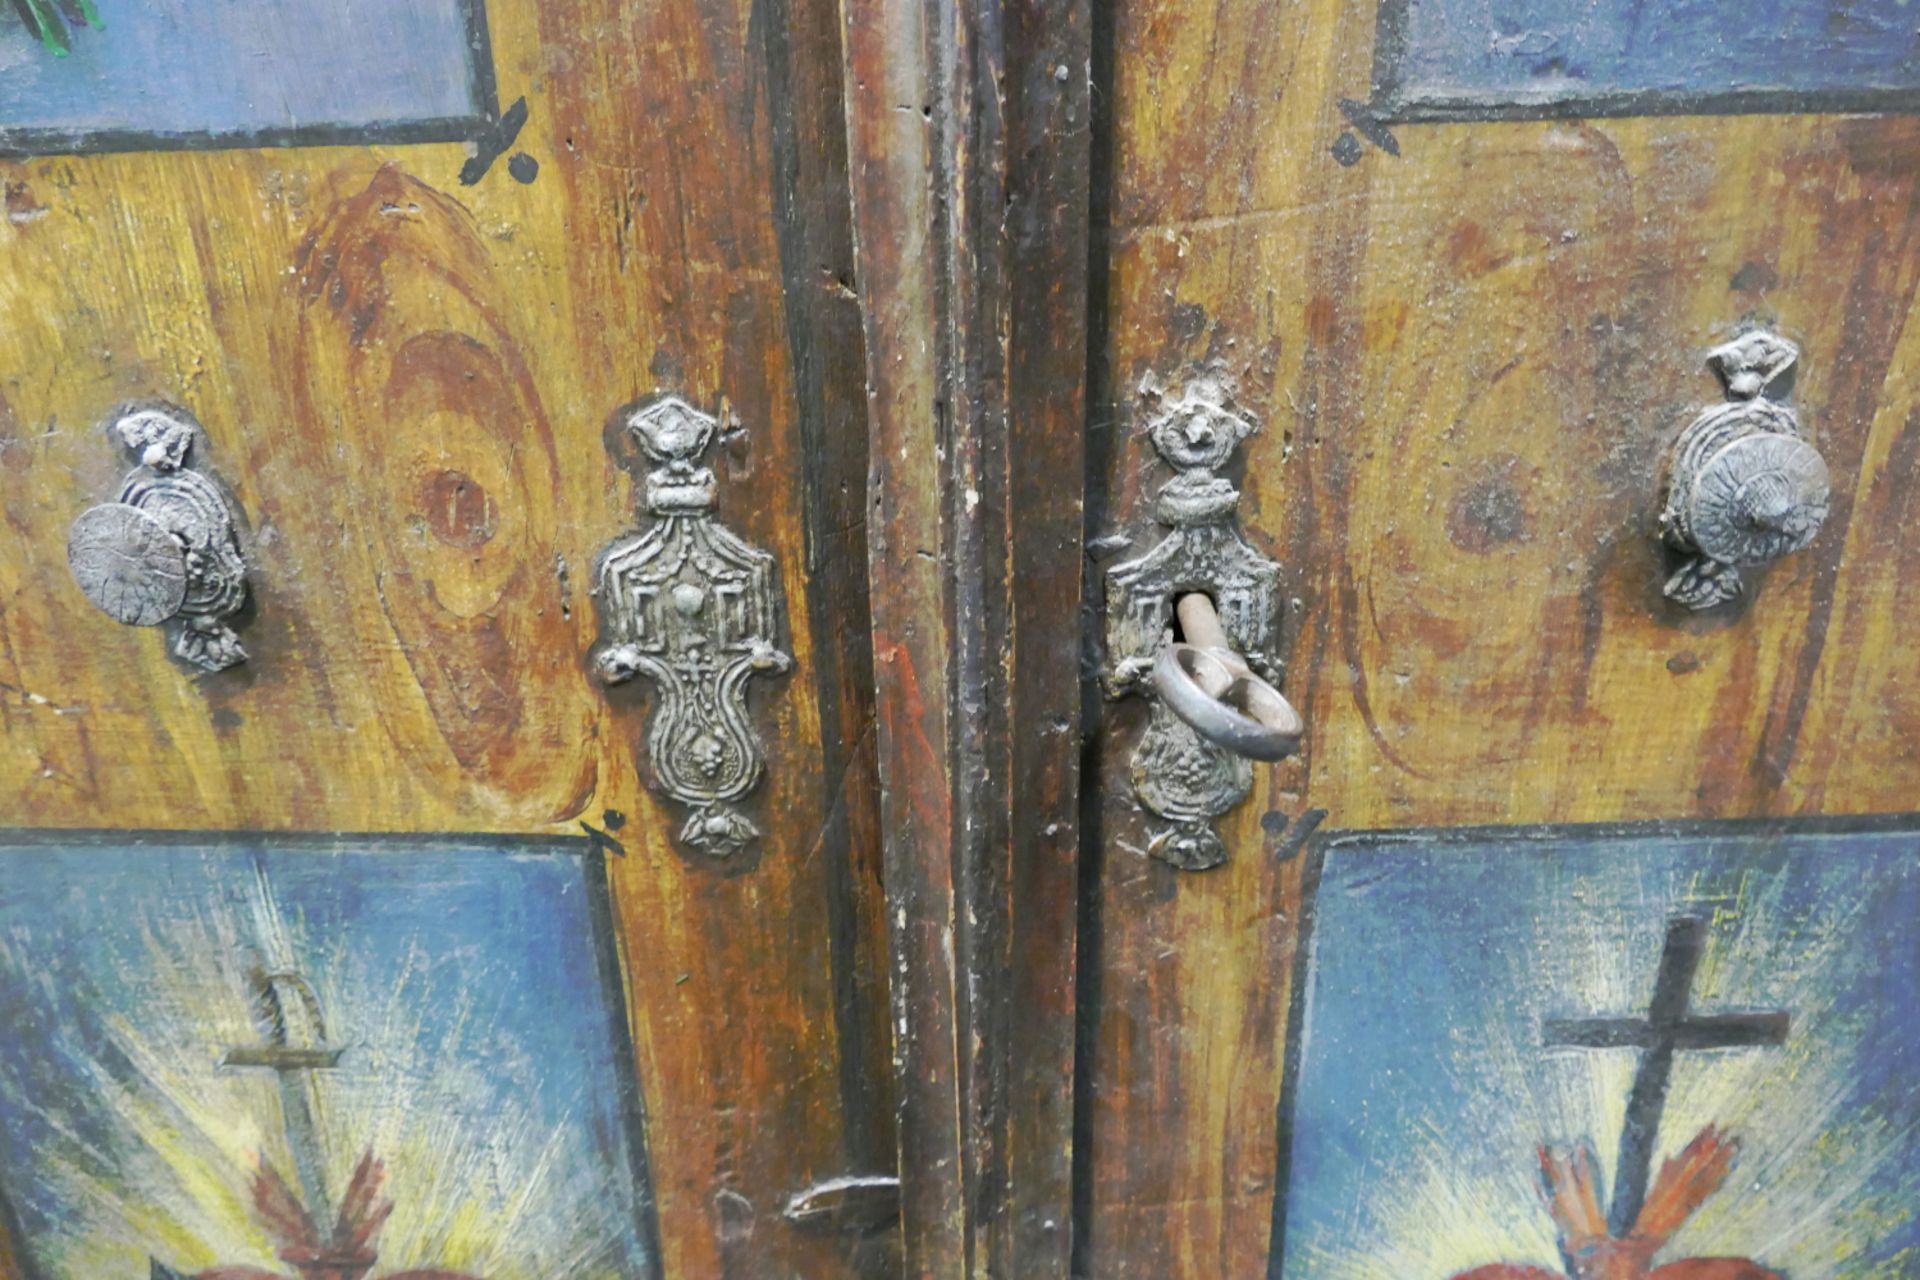 2 Bauernmöbel wohl 19. Jh.: 1 Kleiderschrank dat. 1840 auf Türen Blumen- bzw. Herz Jesu/Mariä-Malere - Image 3 of 4